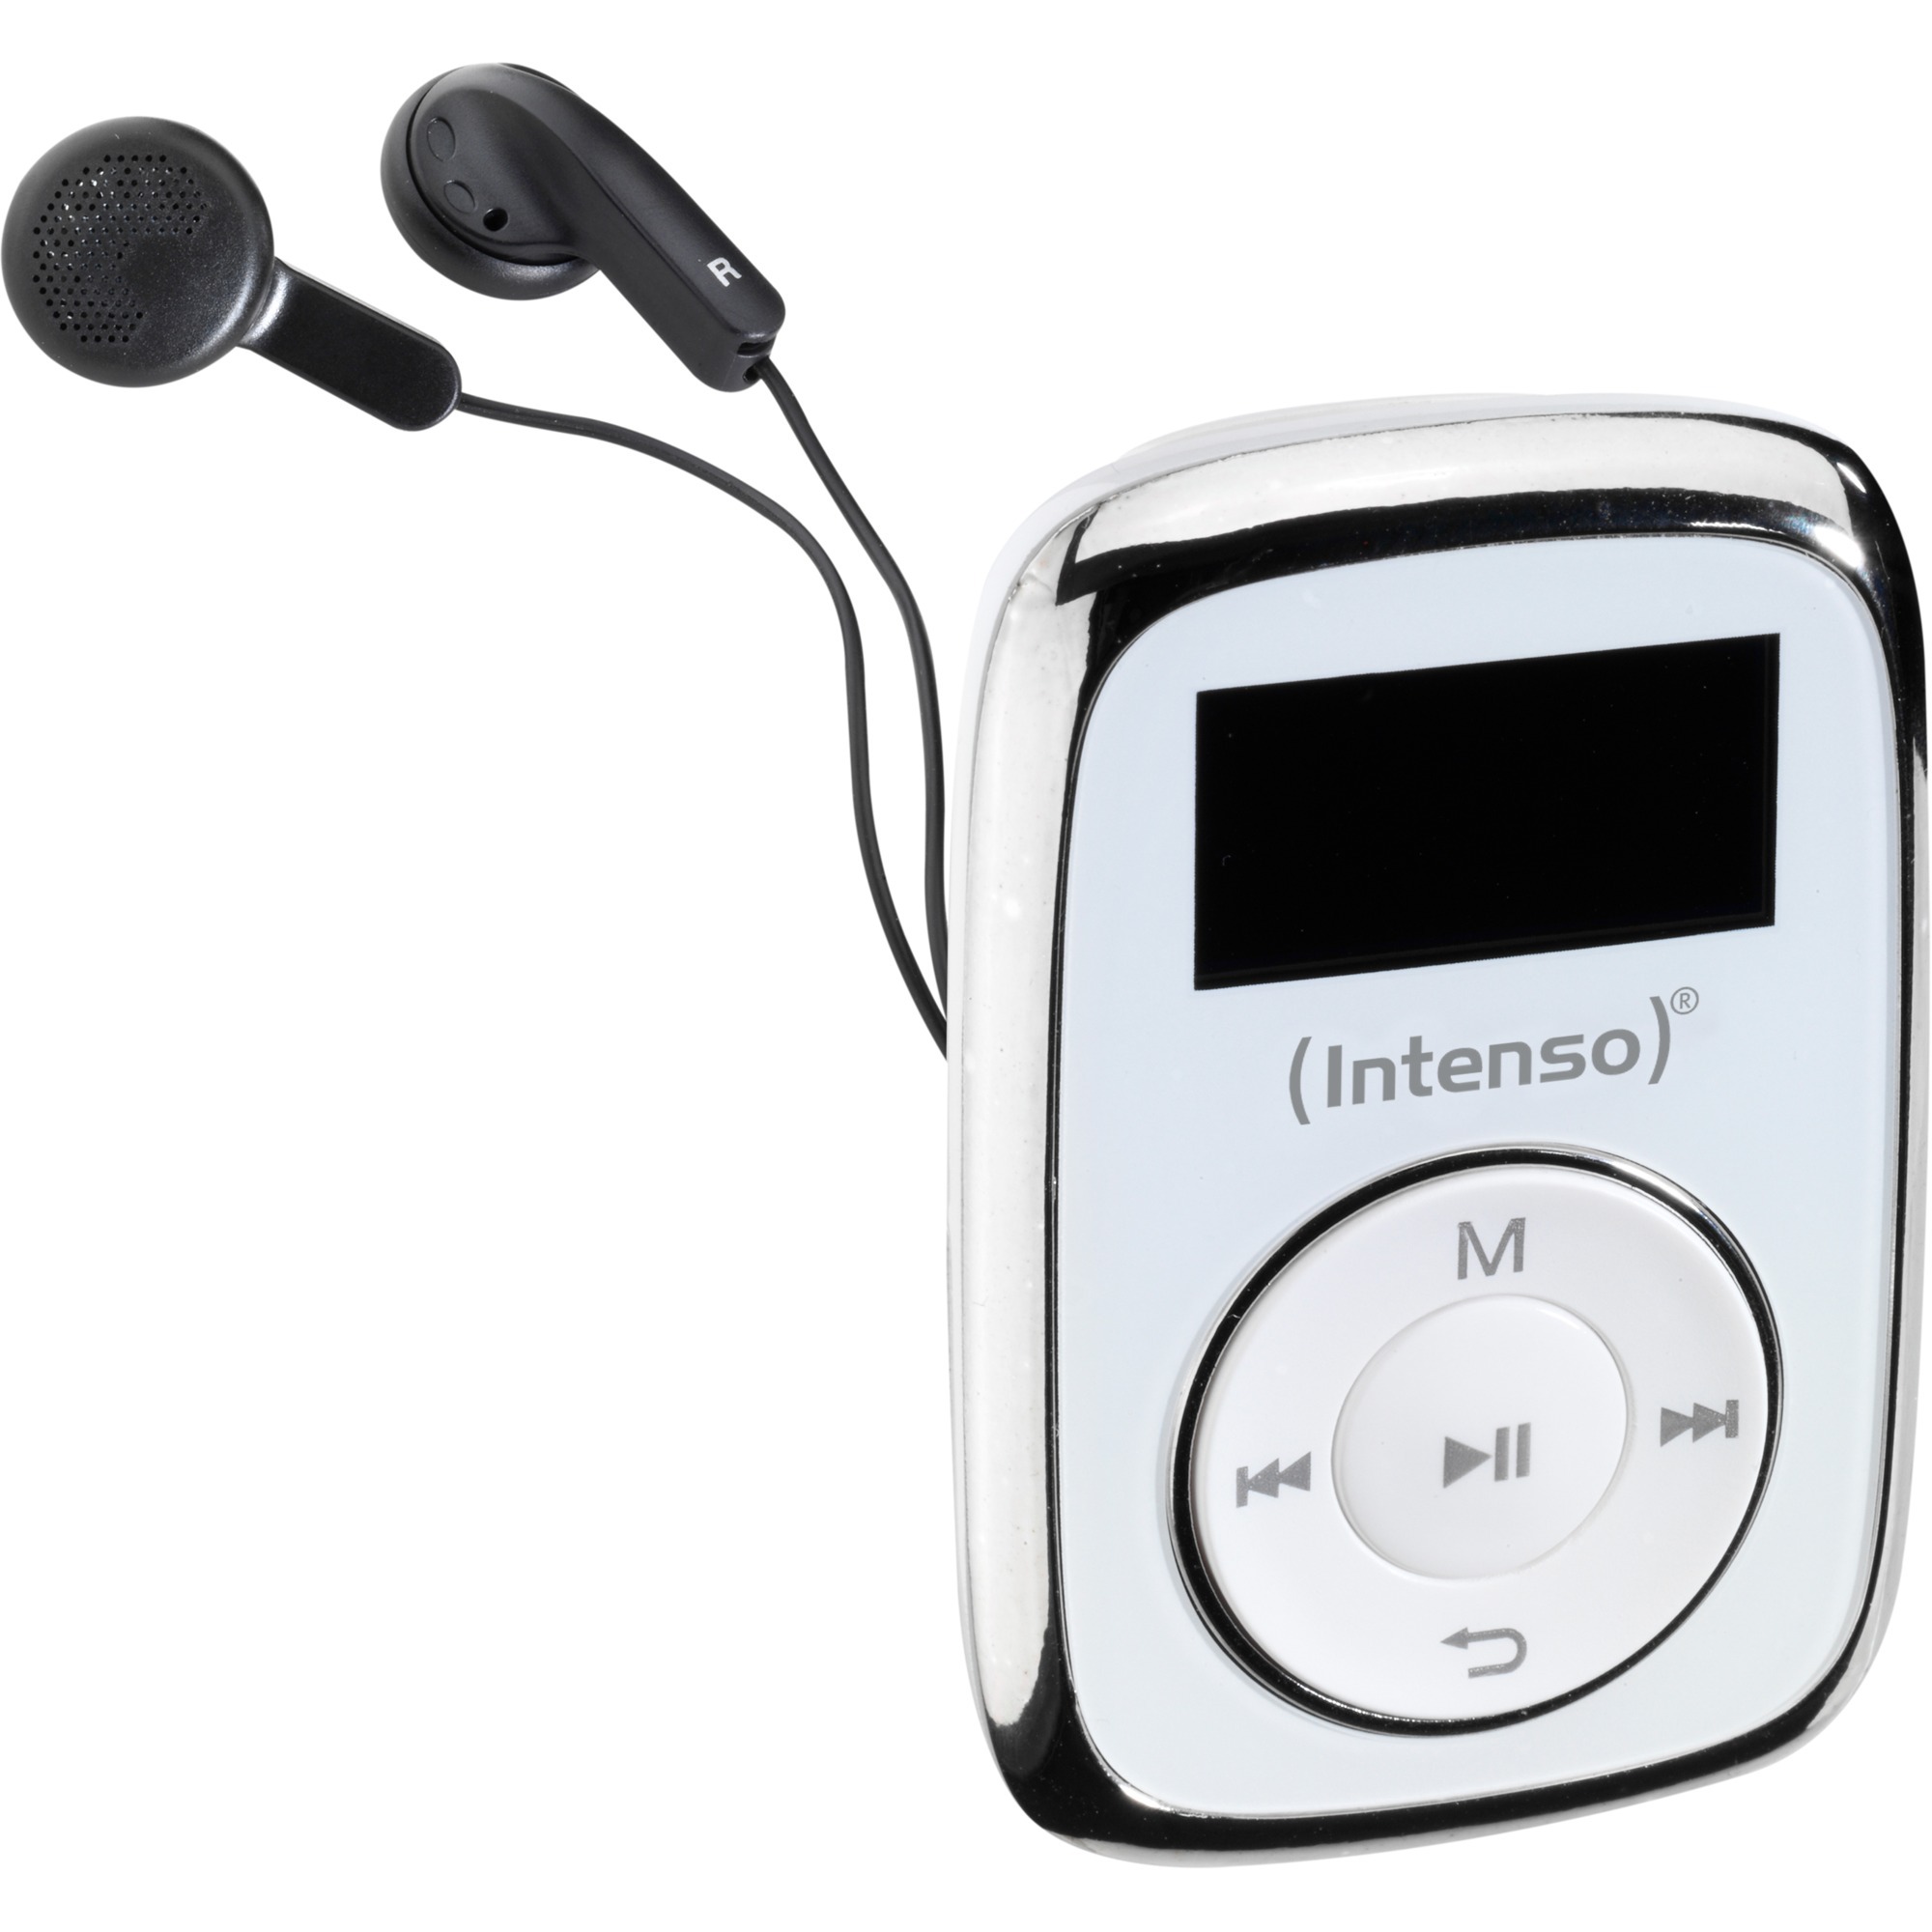 Image of Alternate - Music Mover, MP3-Player online einkaufen bei Alternate